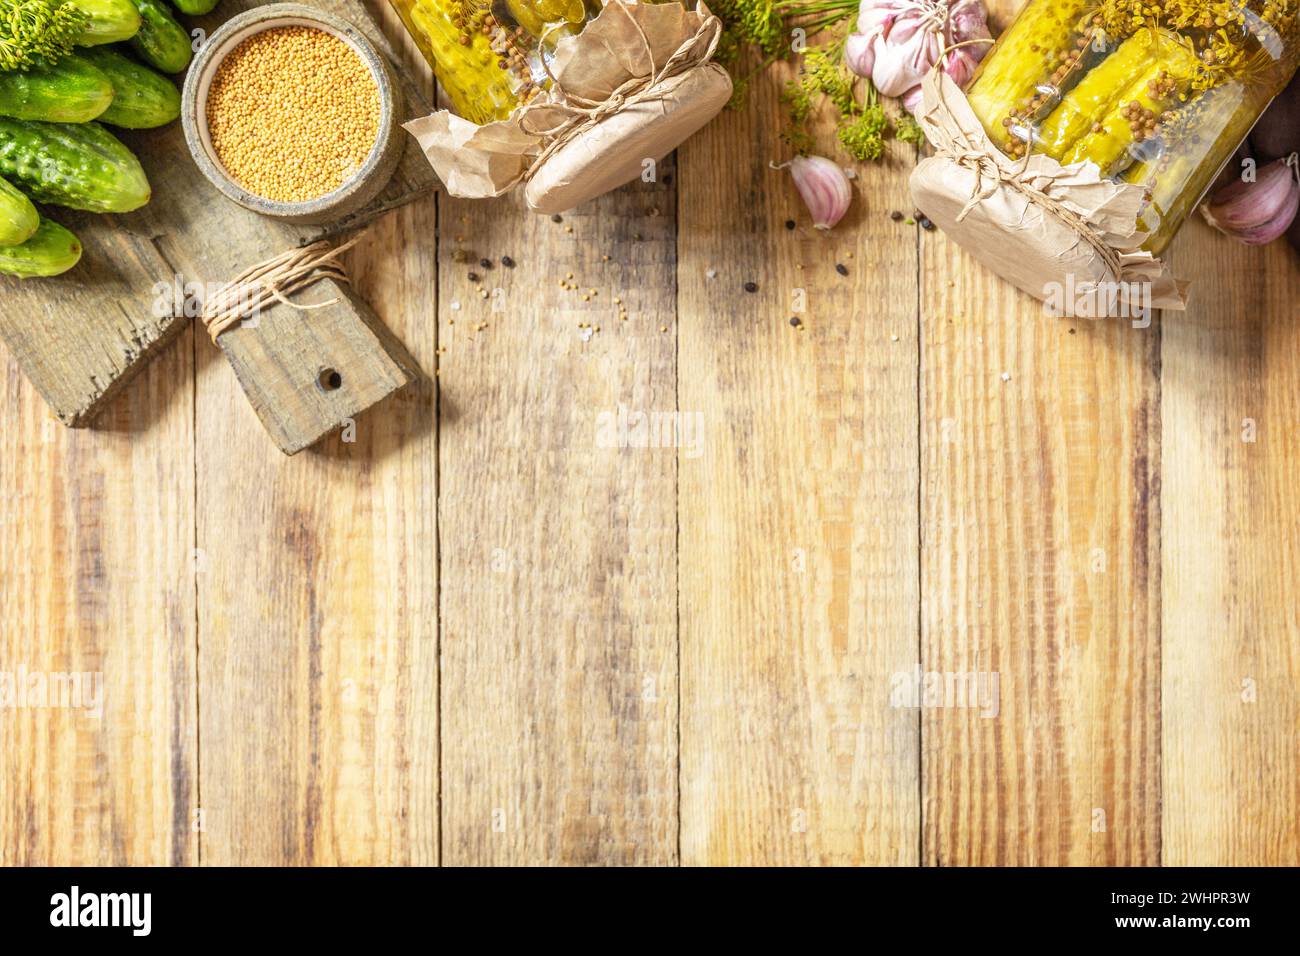 Cibo fermentato fatto in casa sano. Cetrioli sottaceto salati con senape conservata in scatola in vaso di vetro. Economia domestica, har autunnale Foto Stock